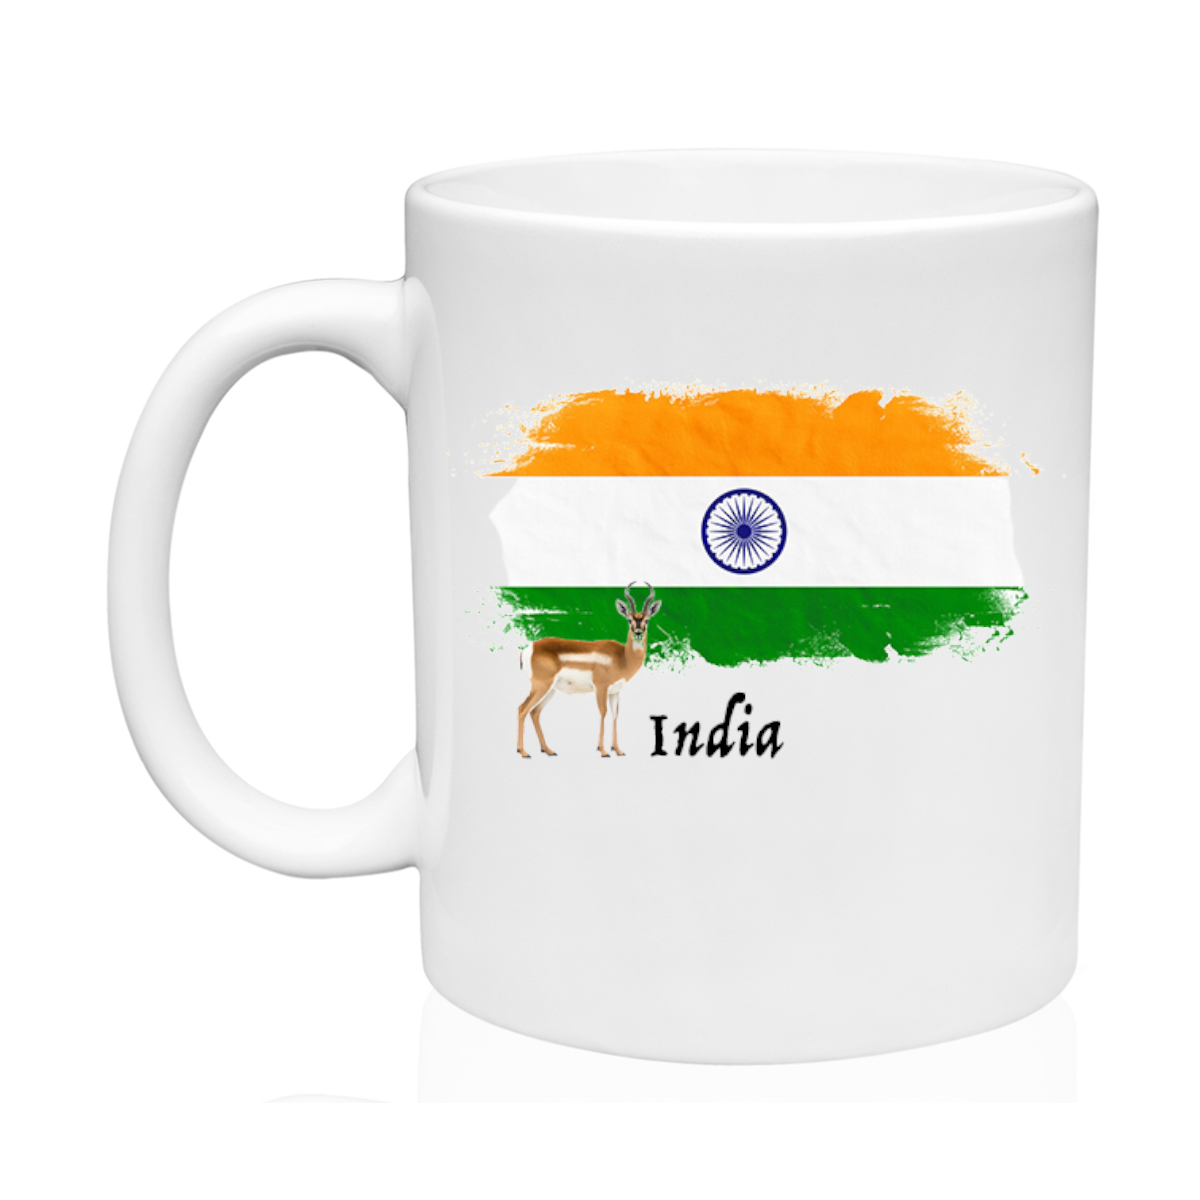 AGAD Turista (I Love India Ceramic Mug)